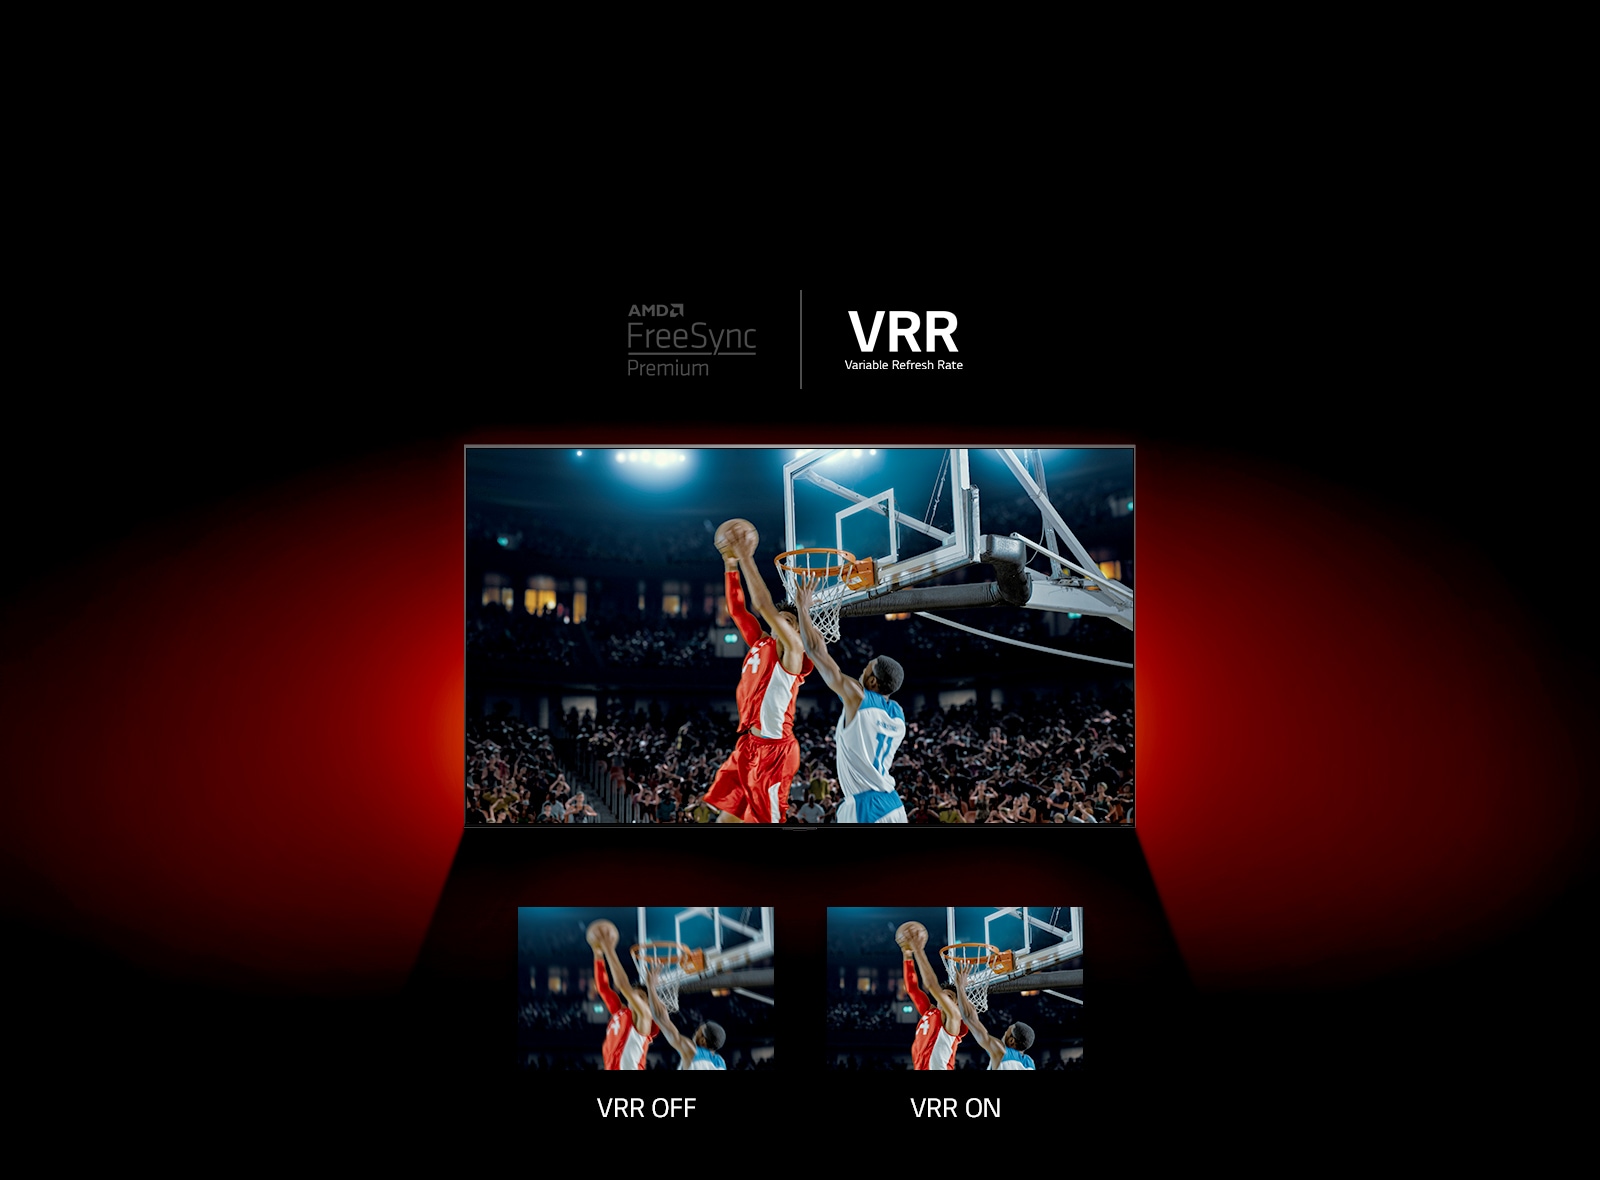 Pred rdečo steno stoji televizor QNED - slika na ekranu prikazuje košarkarsko igro, v kateri igrata dva igralca.  Tik spodaj sta dva okvirja za slike.  Na levi piše VRR OFF in prikaže se zamegljena slika, na desni pa piše VRR ON in prikaže se ista slika.